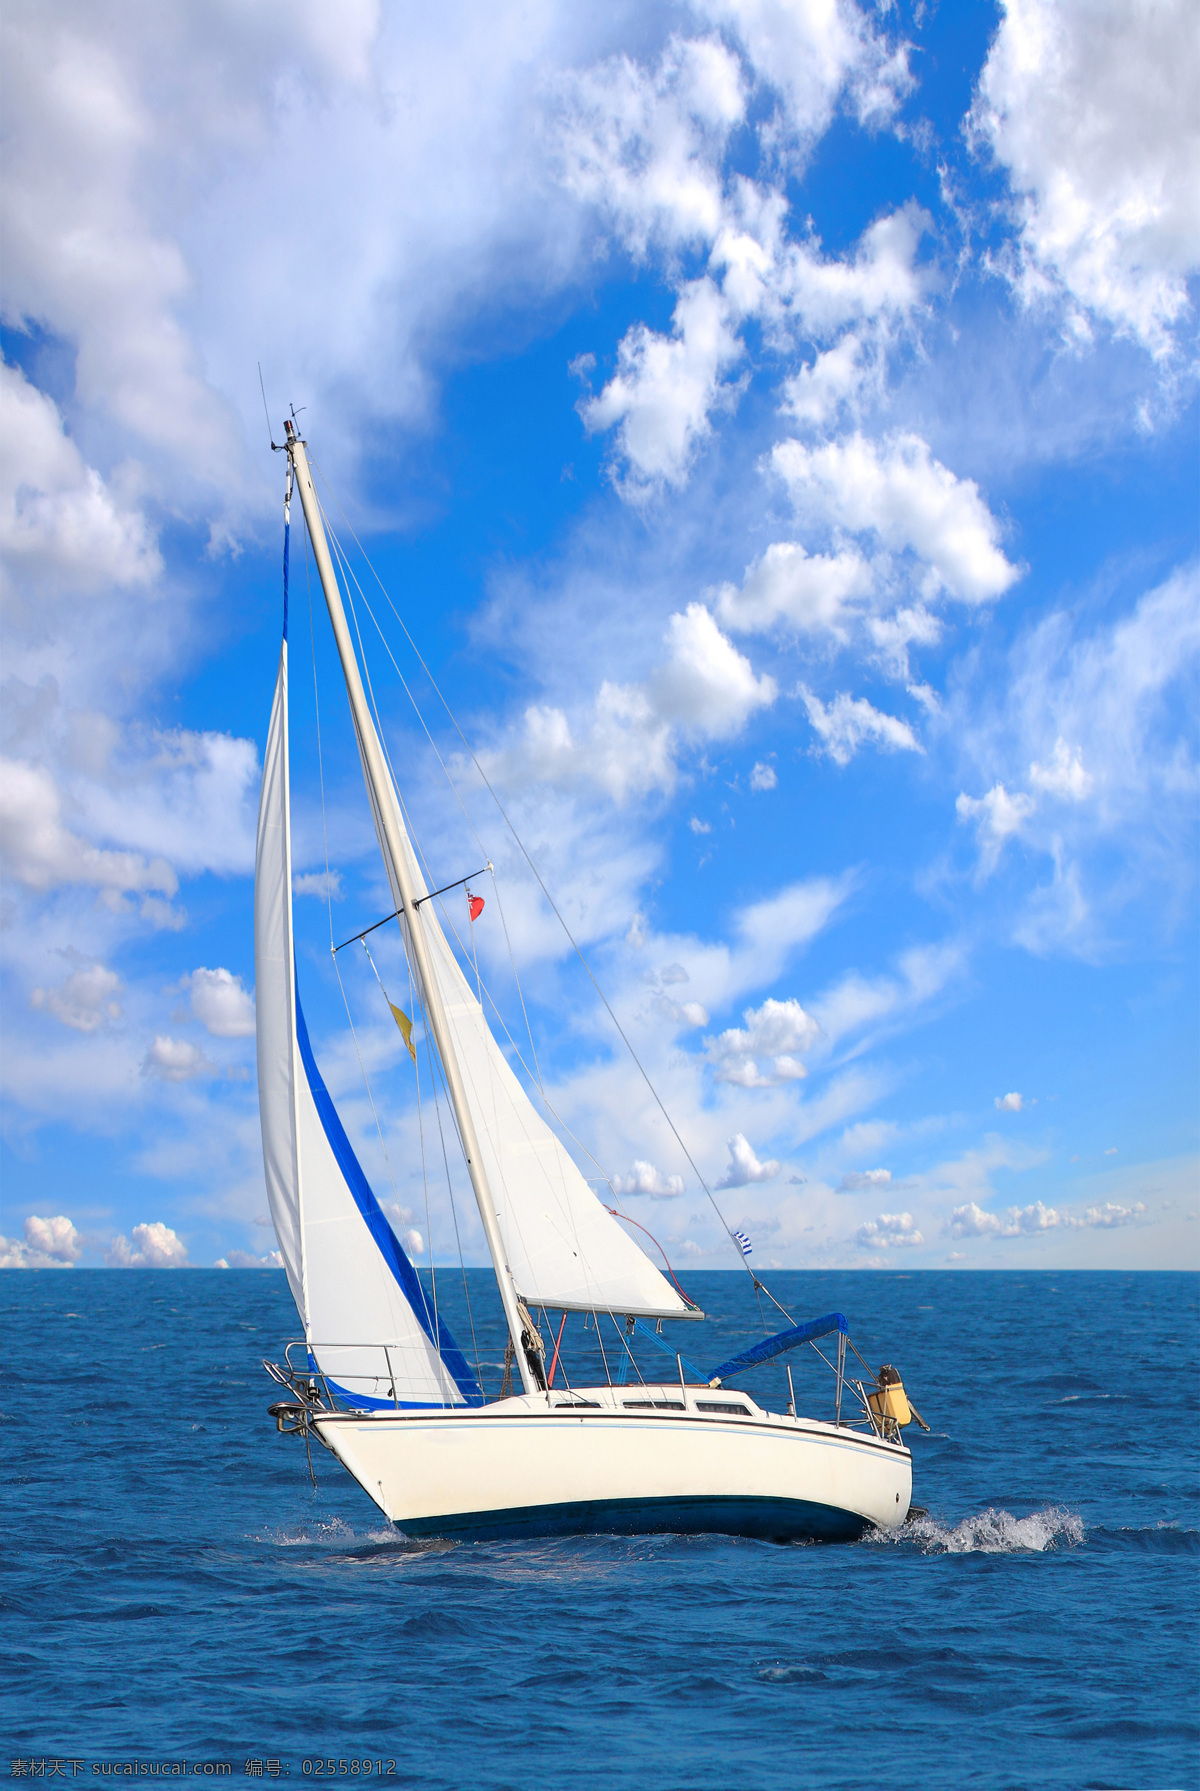 小舱型帆船 帆 白色帆船 双帆 交通工具 旅游摄影 国外旅游